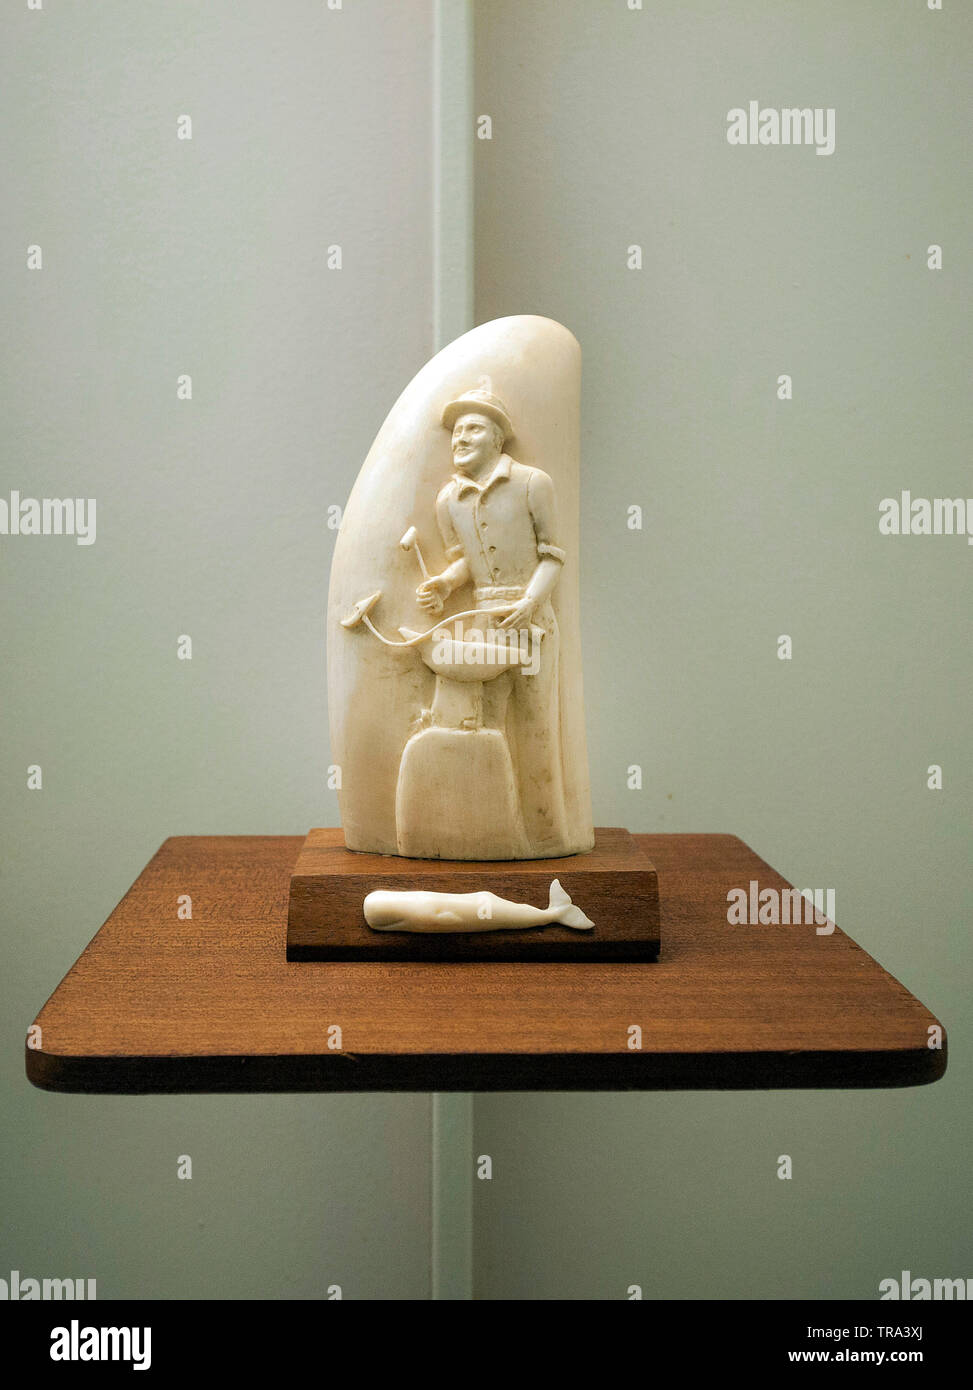 Srimshaw, hanicraft avec sculpture sur ivoire astucieuse dents de cachalots, de l'industrie baleinière, Musée Horta, Açores, Portugal Banque D'Images